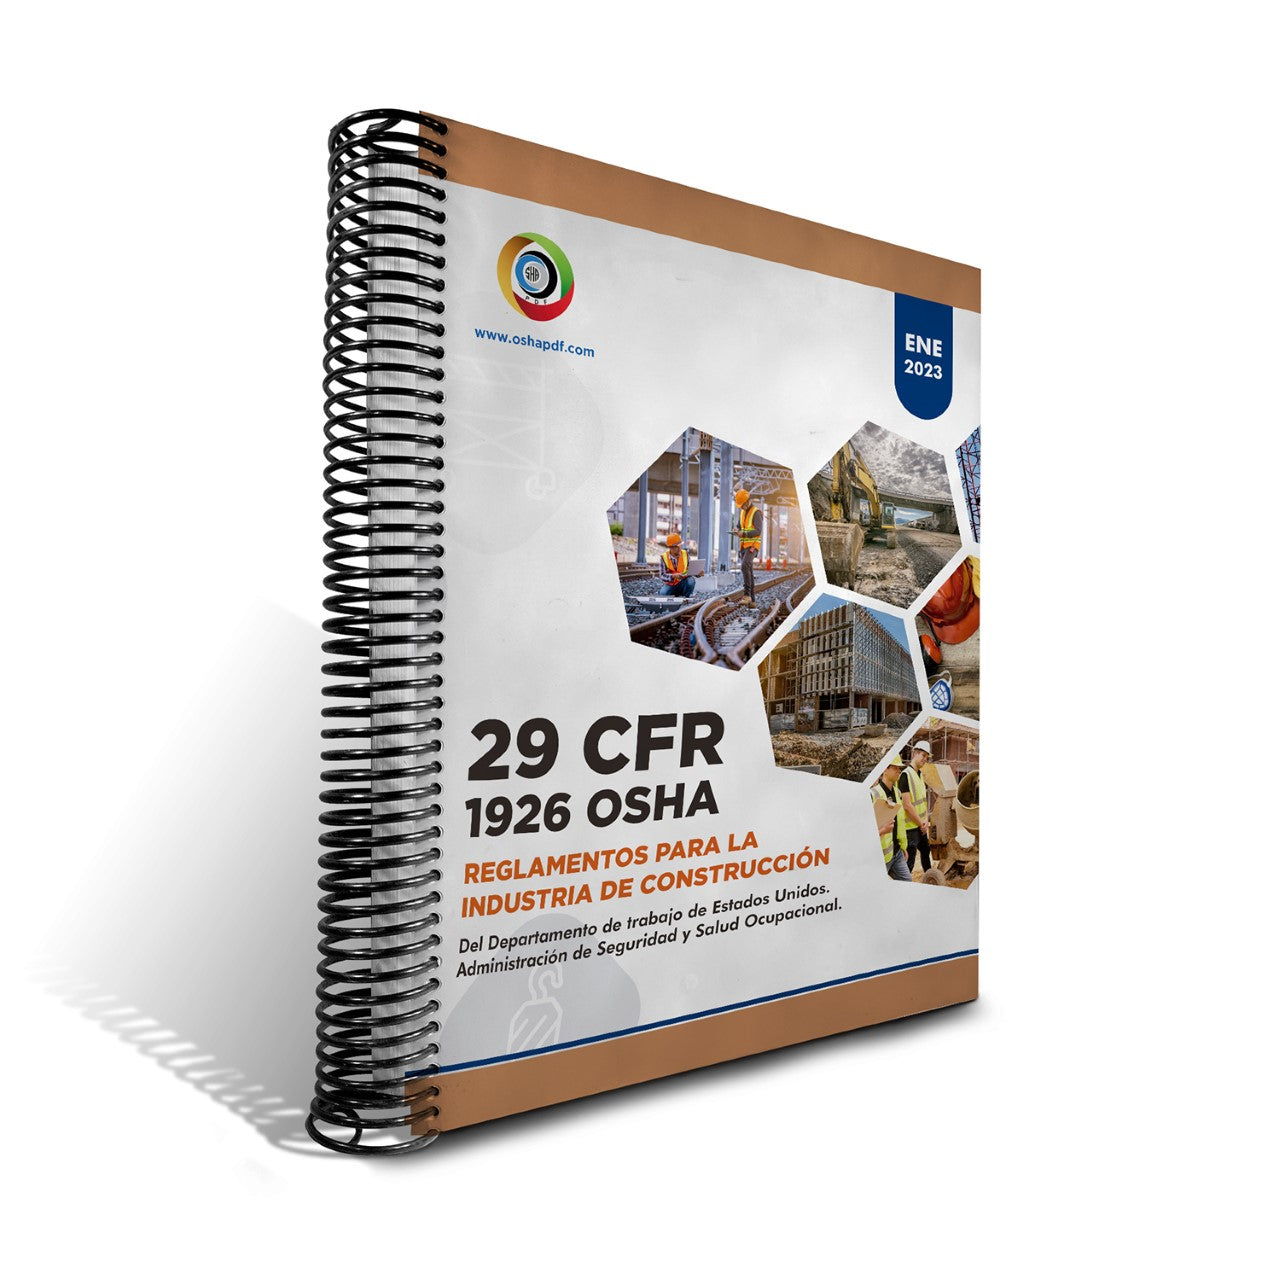 Spanish OSHA 1926 Construction Industry January 2023 Book